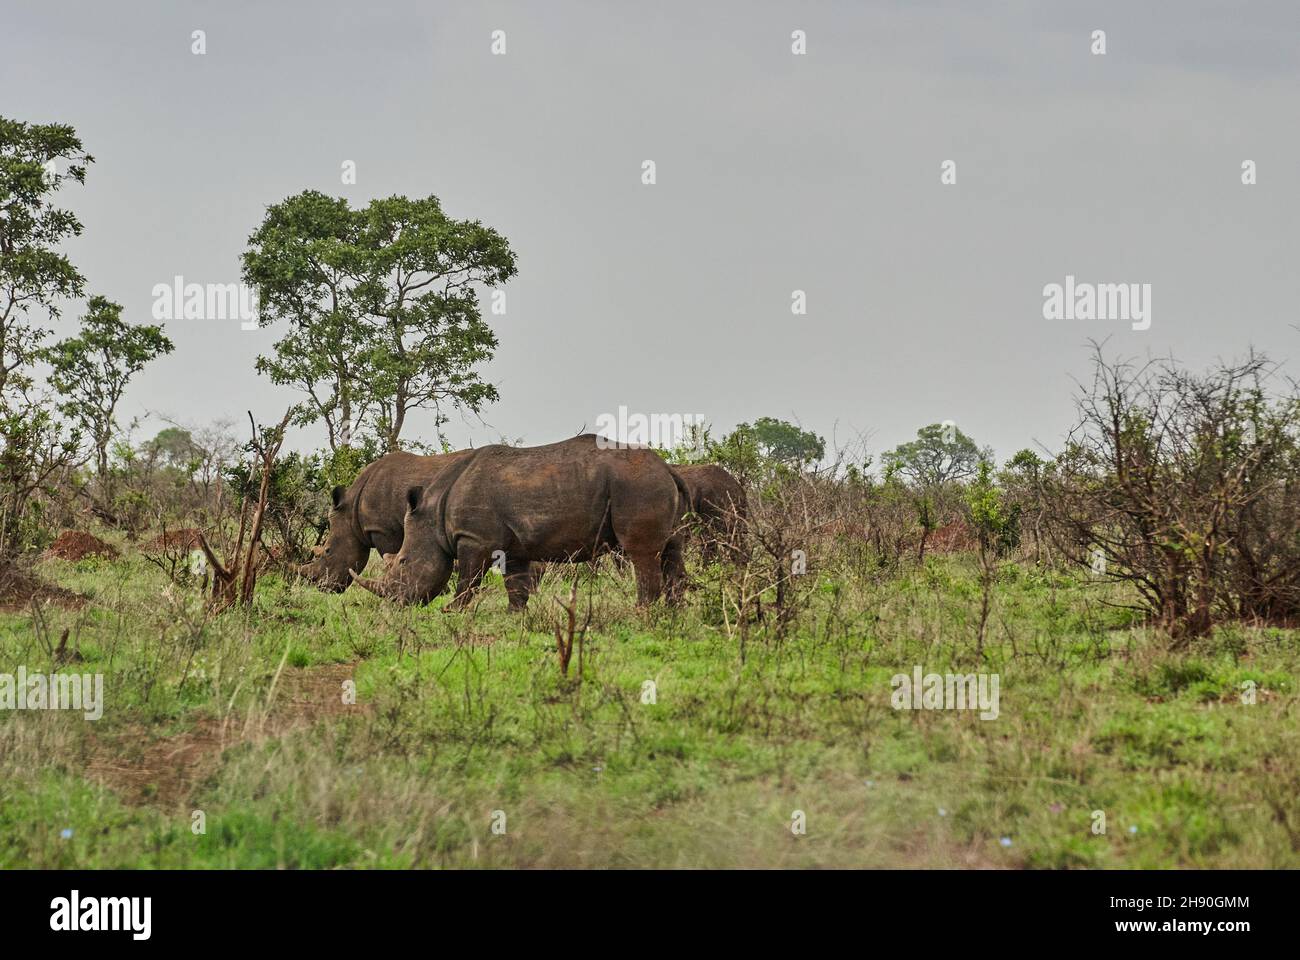 Gruppo di rinoceronti bianchi o rhinoceros quadrati, Ceratotherium simum, pascolo nel denso cespuglio africano Foto Stock